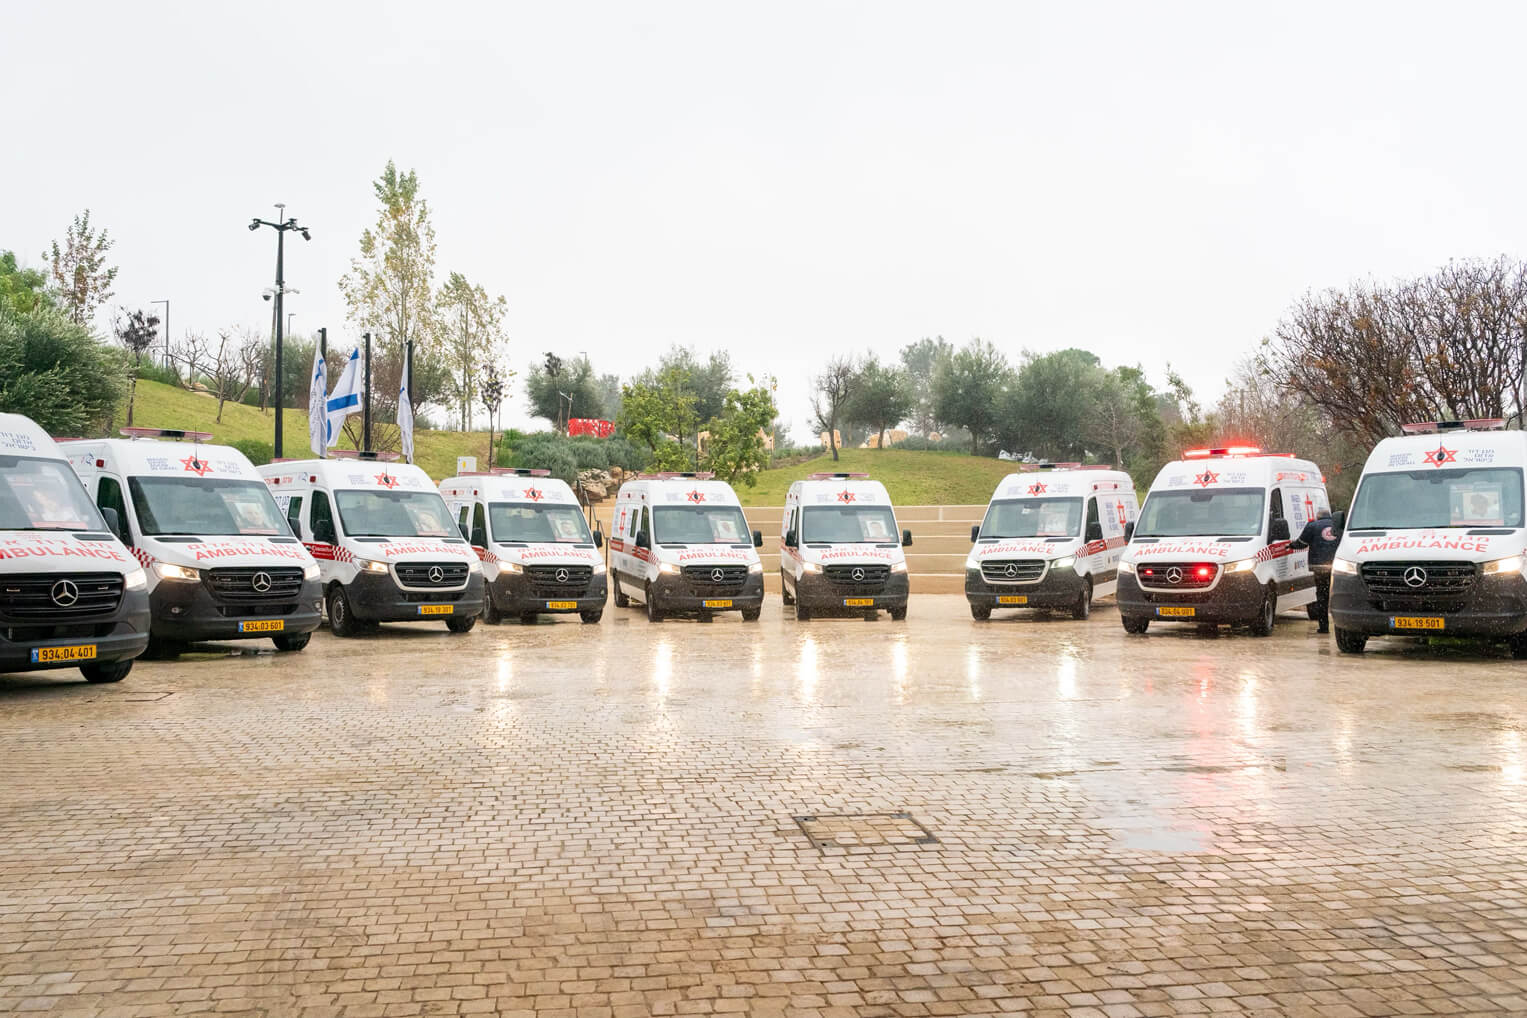 Las catorce ambulancias, con blindaje mejorado para defenderse contra los ataques de Hamás, ayudarán a proteger a los miembros de Maguén David Adom cuando presten ayuda a los heridos.